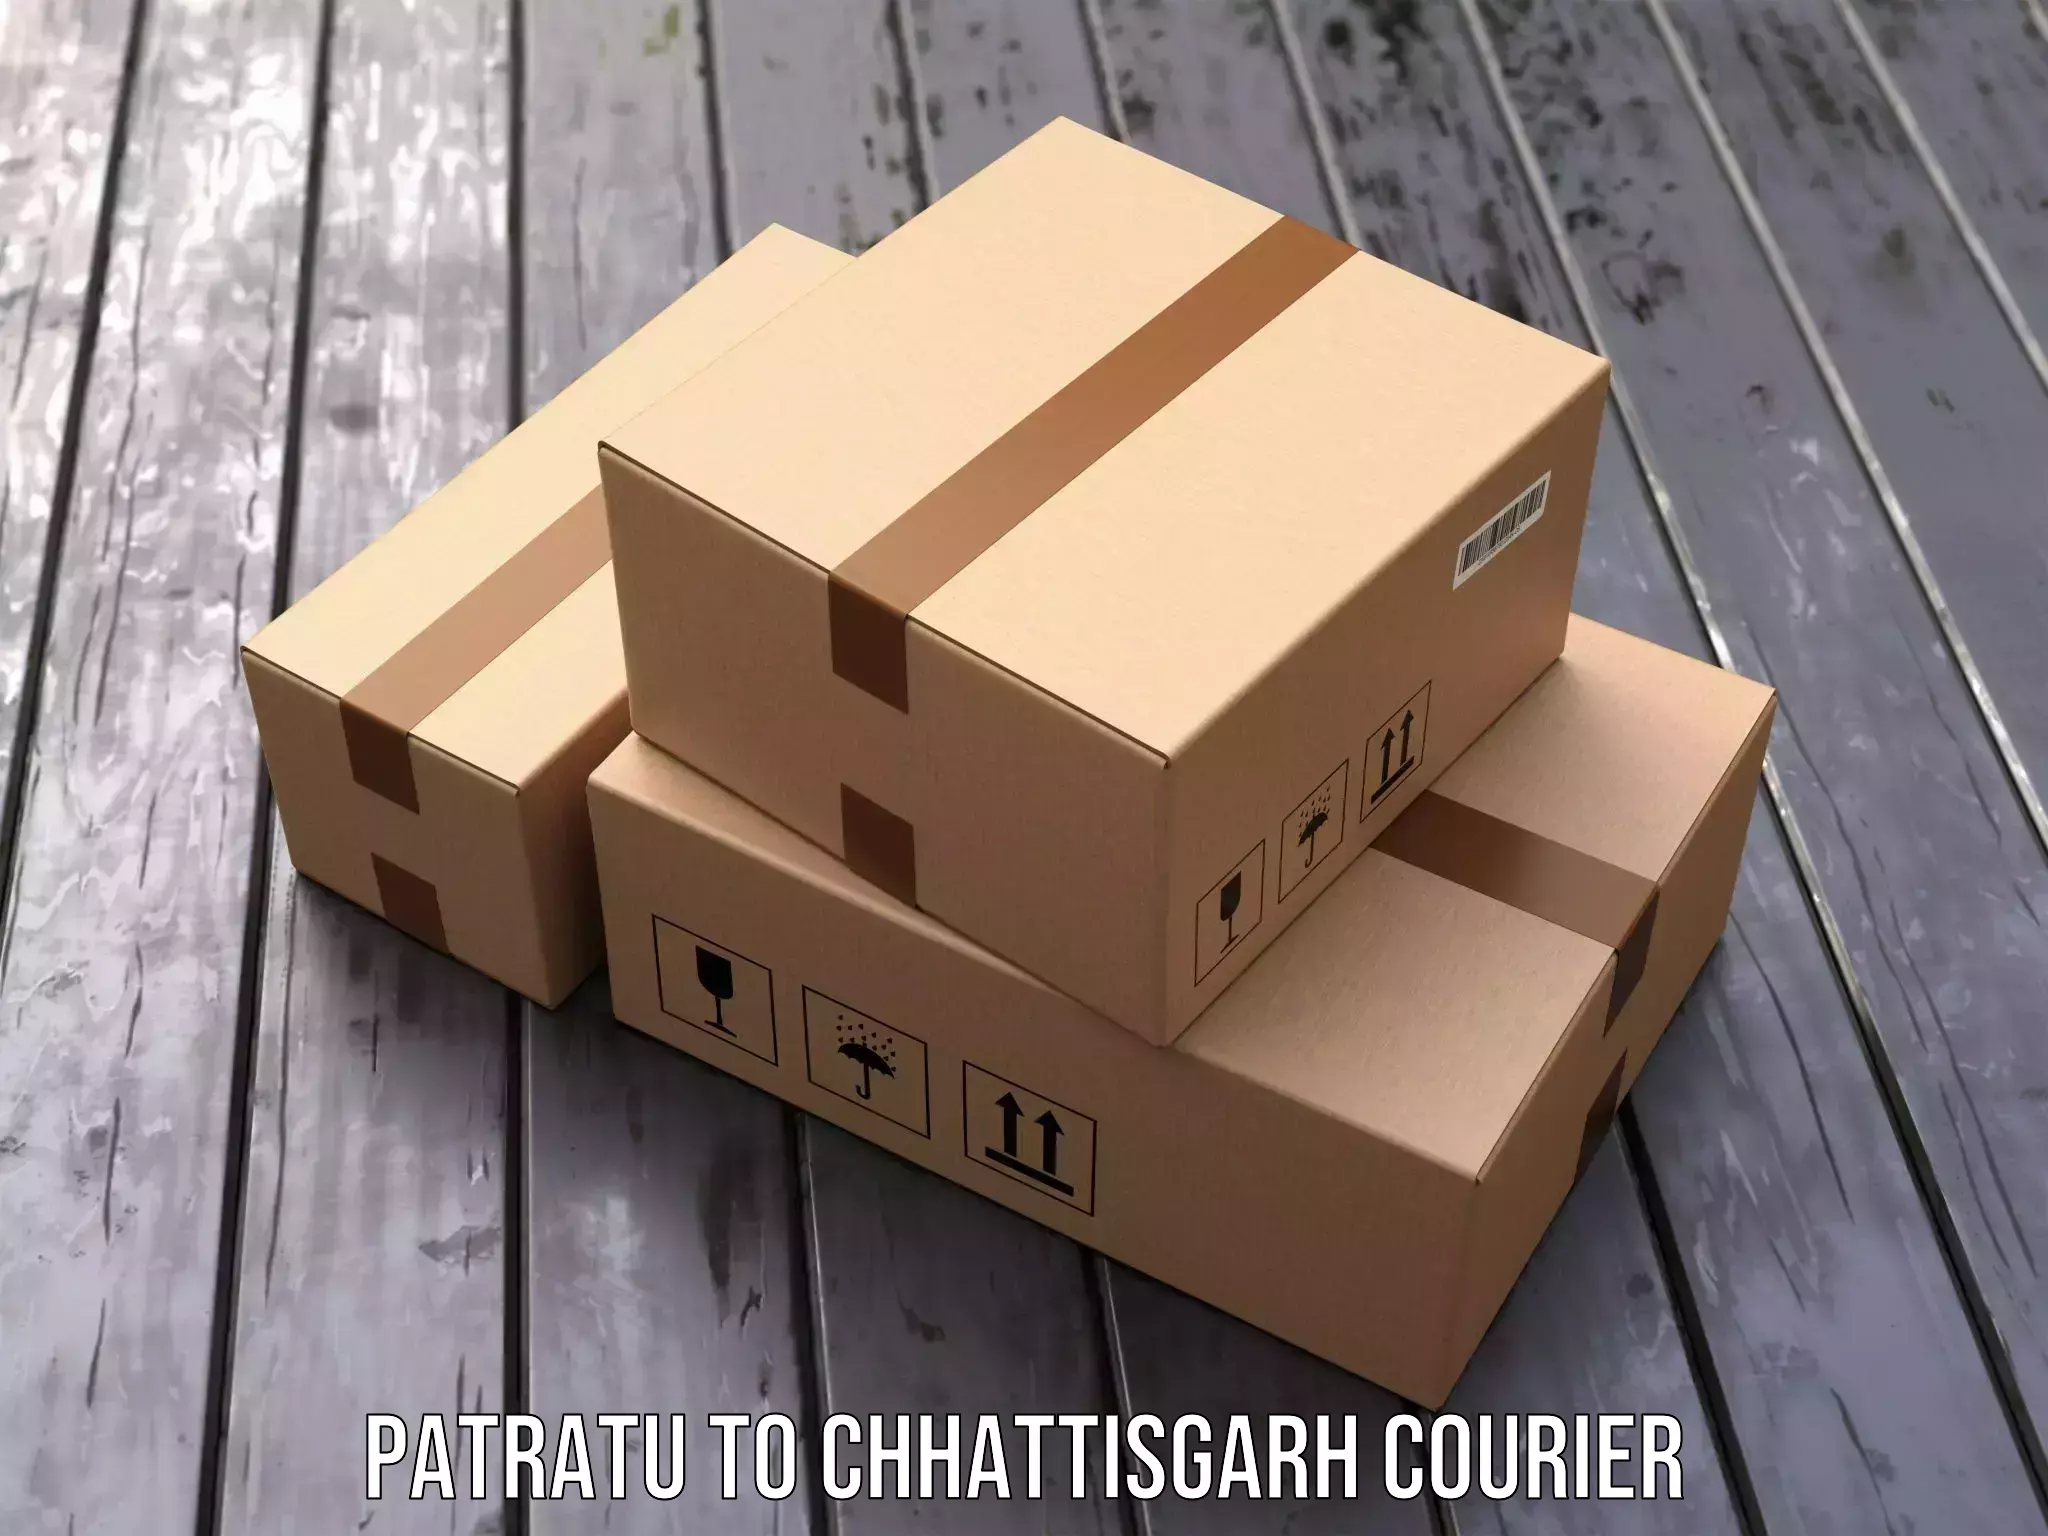 On-time delivery services Patratu to Patna Chhattisgarh